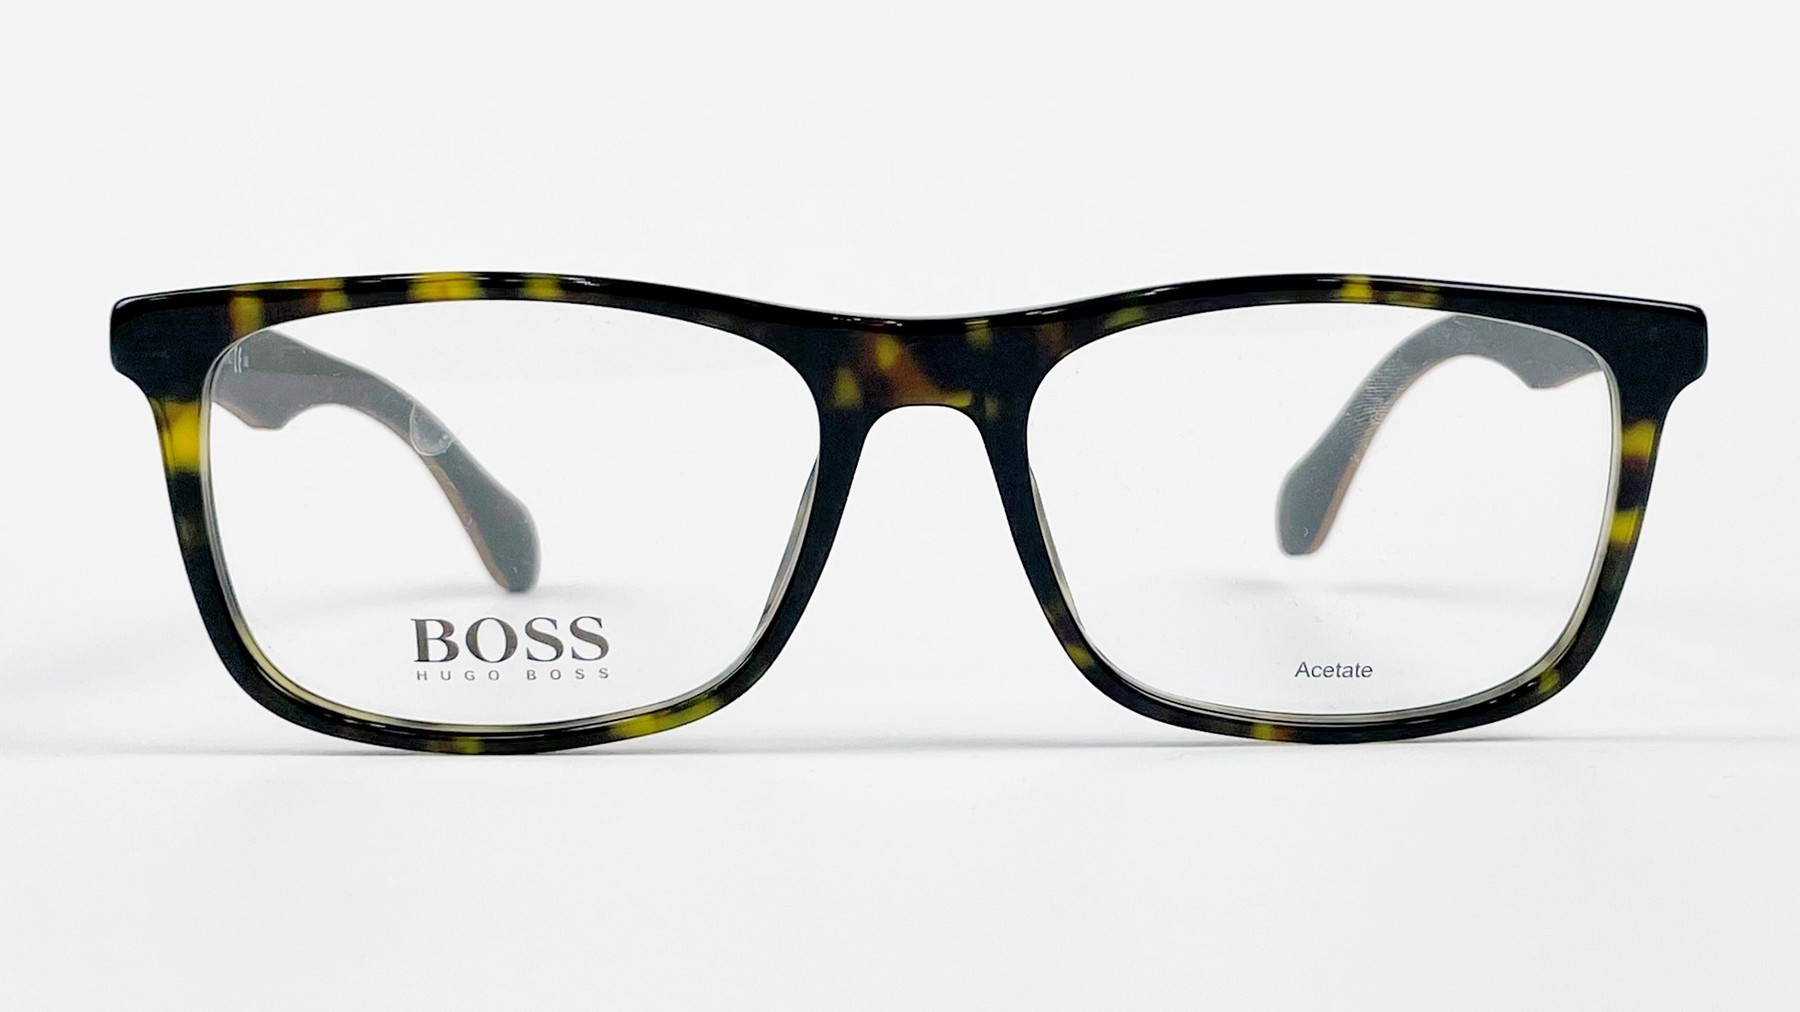 HUGO BOSS 0779 RAH, Korean glasses, sunglasses, eyeglasses, glasses